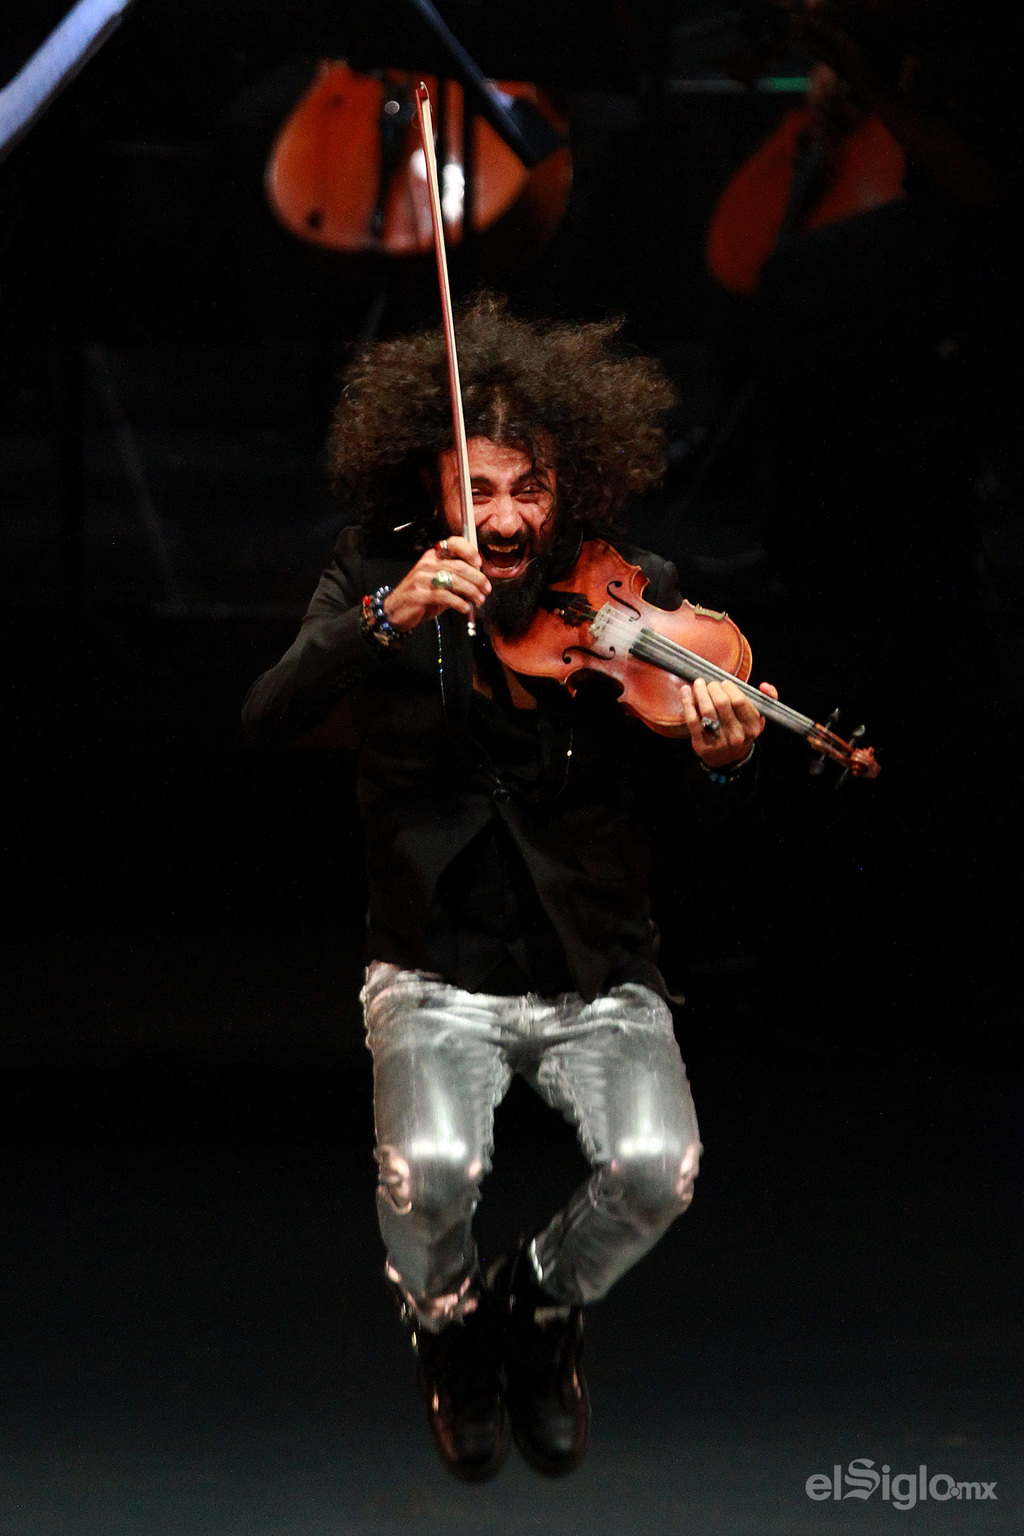 Global. El violinista suele llegar hasta los confines del mundo en sus giras. (ESPECIAL)